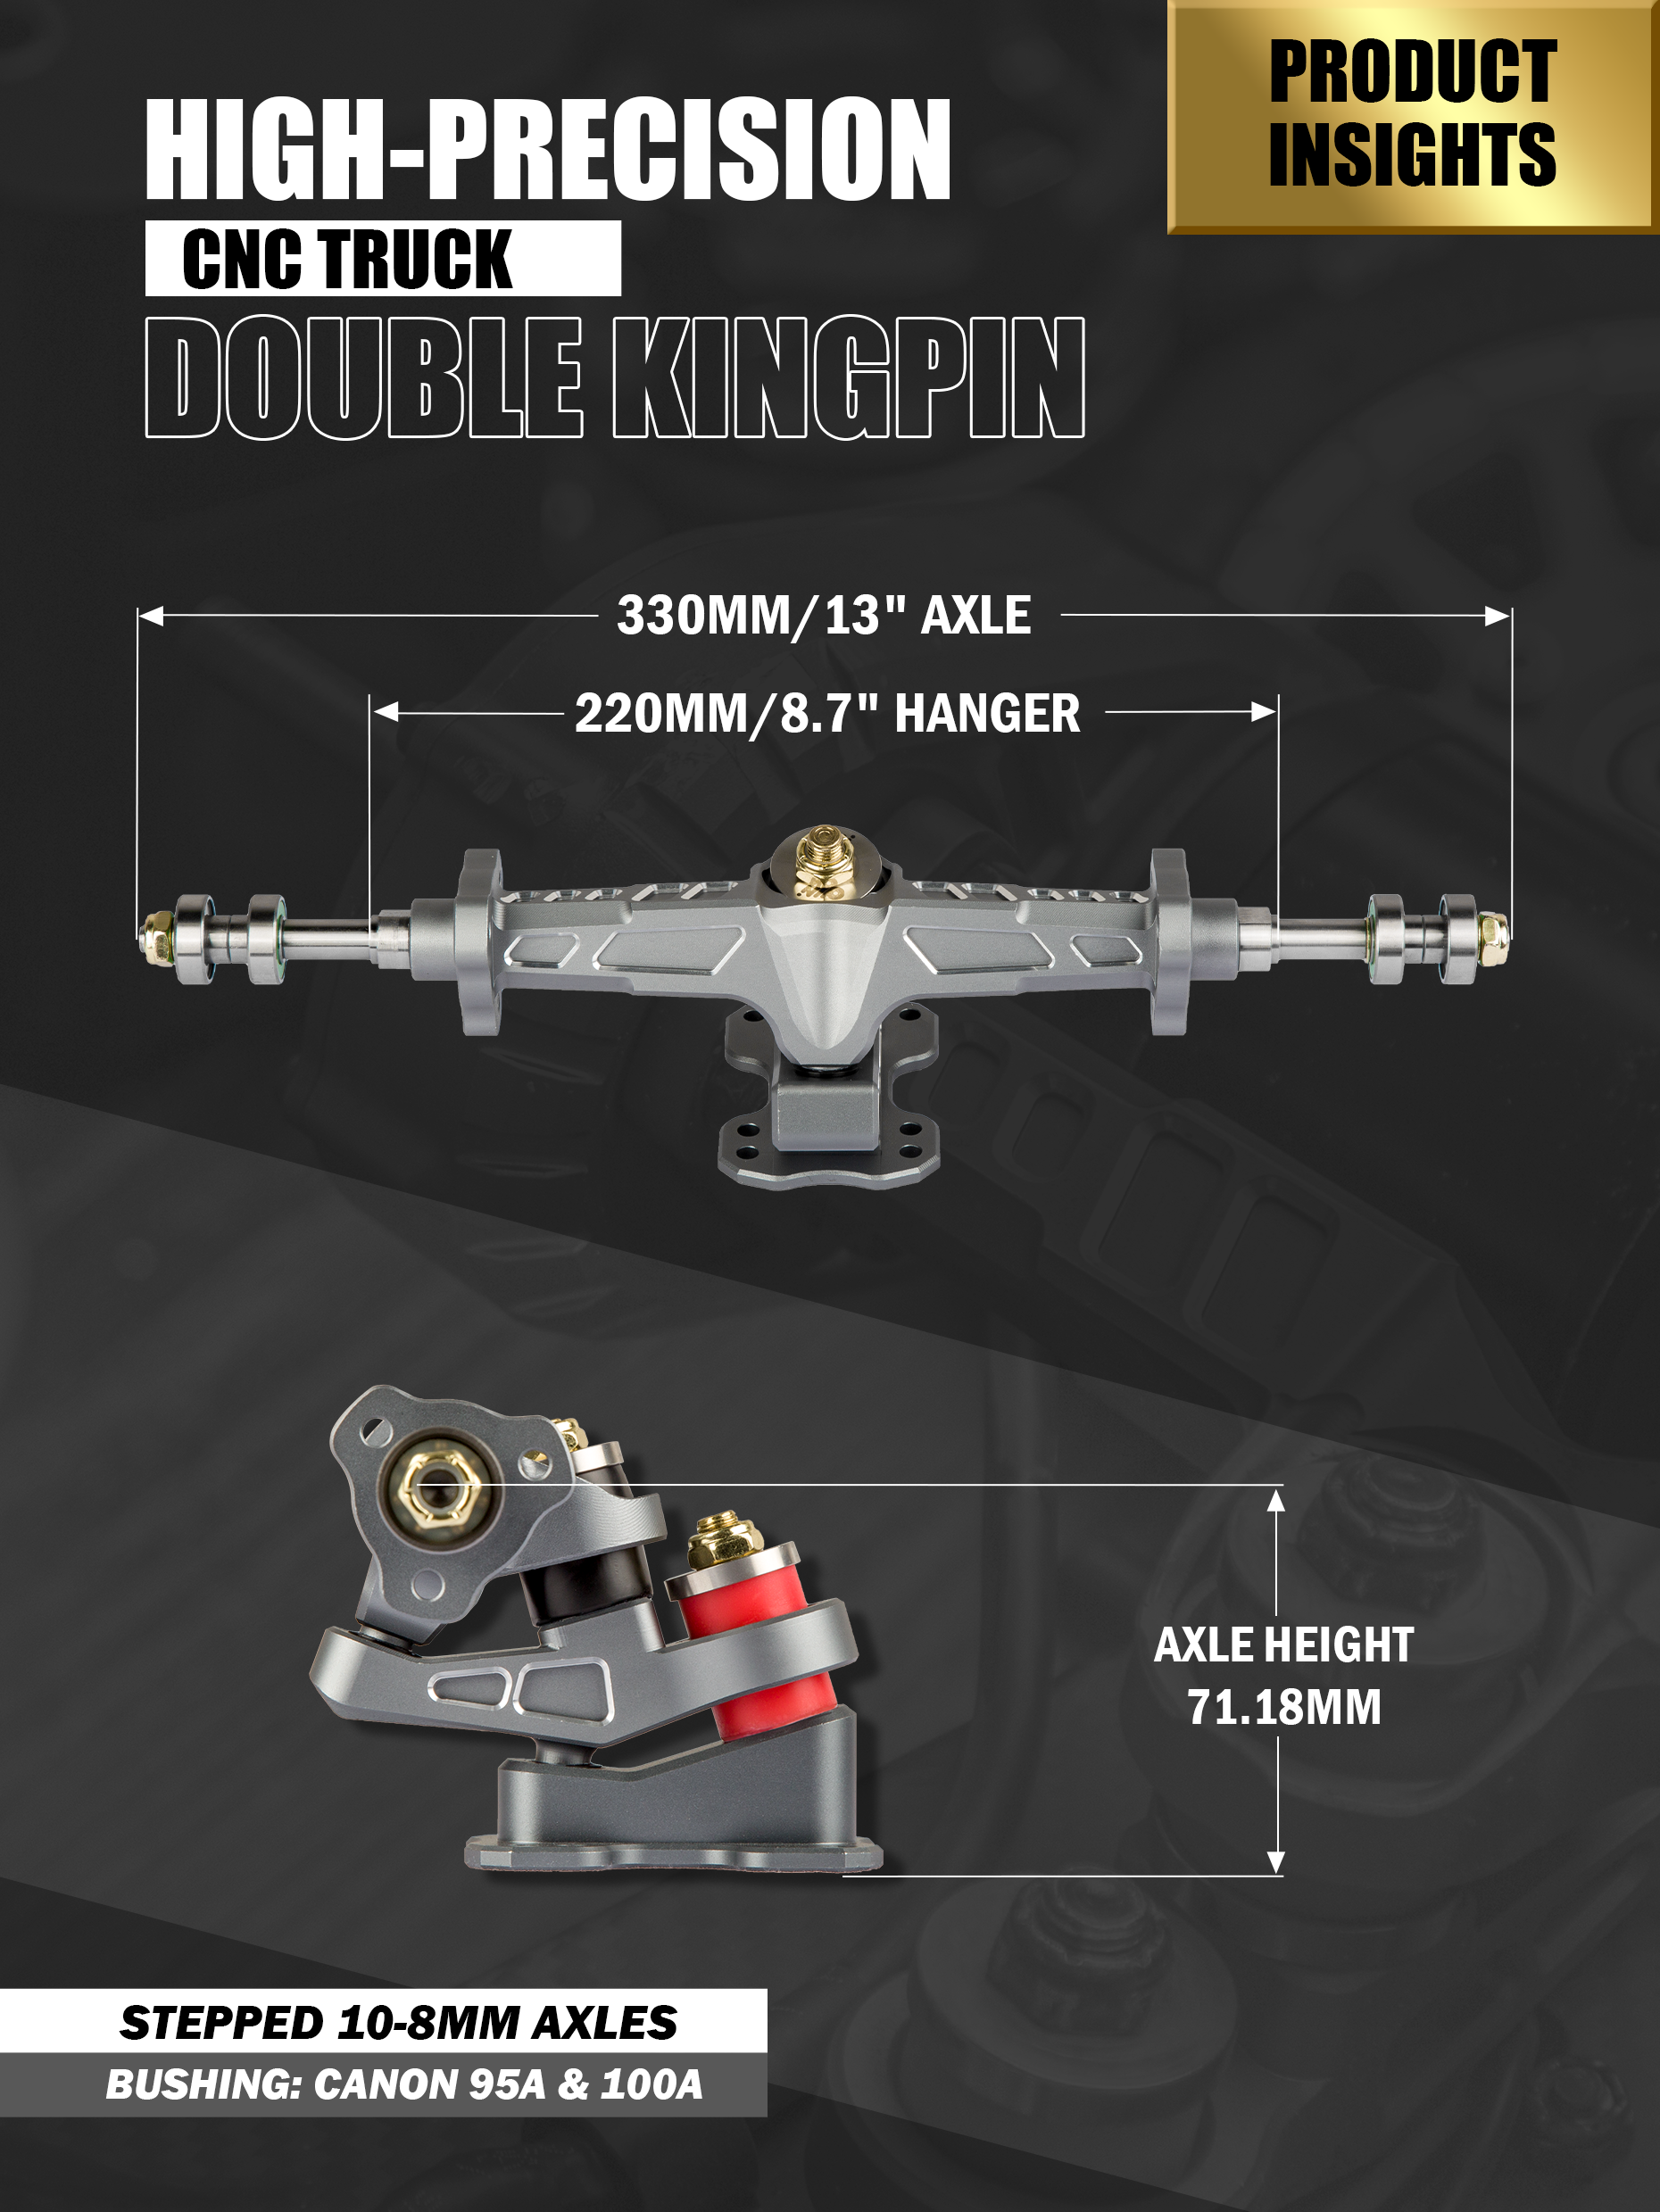 Omni Esk8 double kingpin high-precision CNC truck